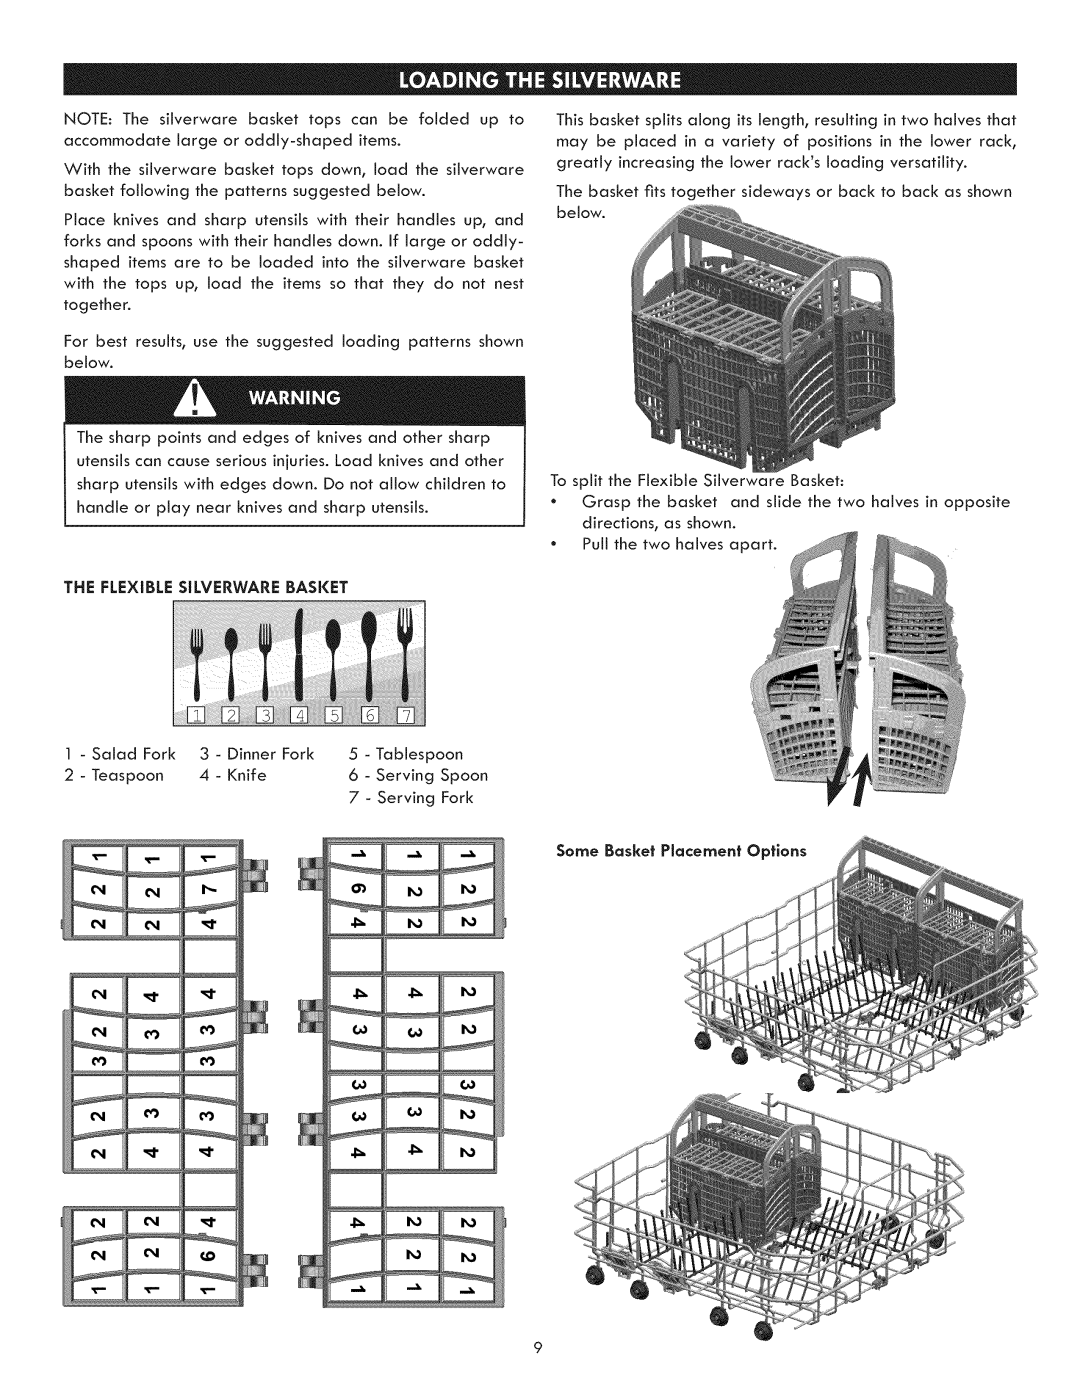 Kenmore 630.1395 manual The Flexible Silverware Basket 